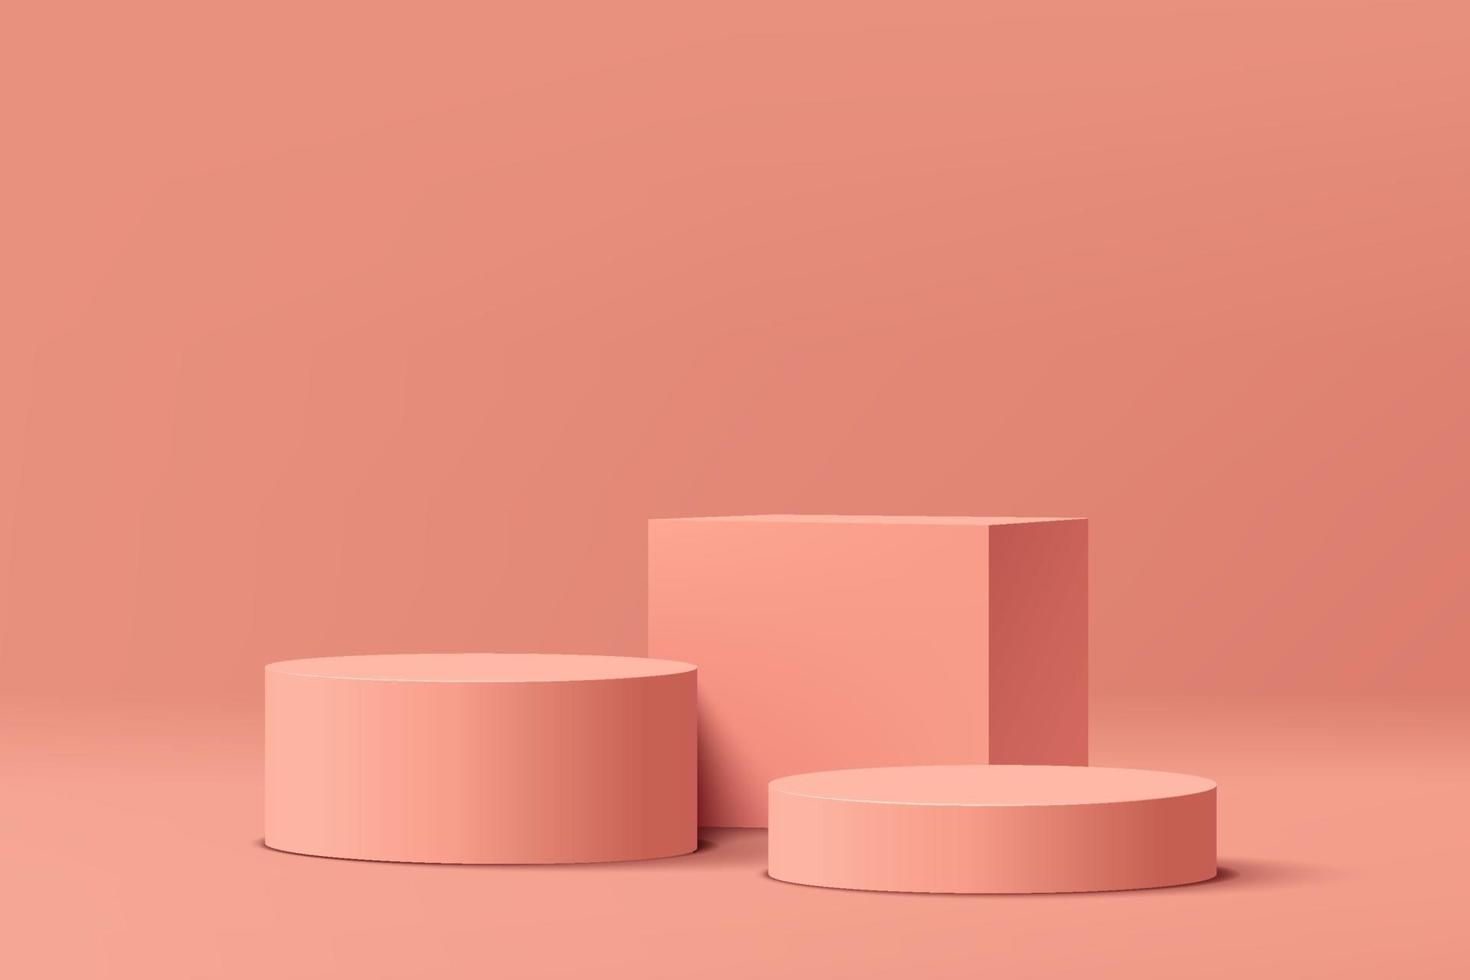 podium de piédestal géométrique corail rose. scène de mur minimal rose. une plate-forme moderne pour la vitrine. chambre abstraite de couleur pastel. rendu vectoriel forme géométrique 3d pour la présentation d'affichage du produit.